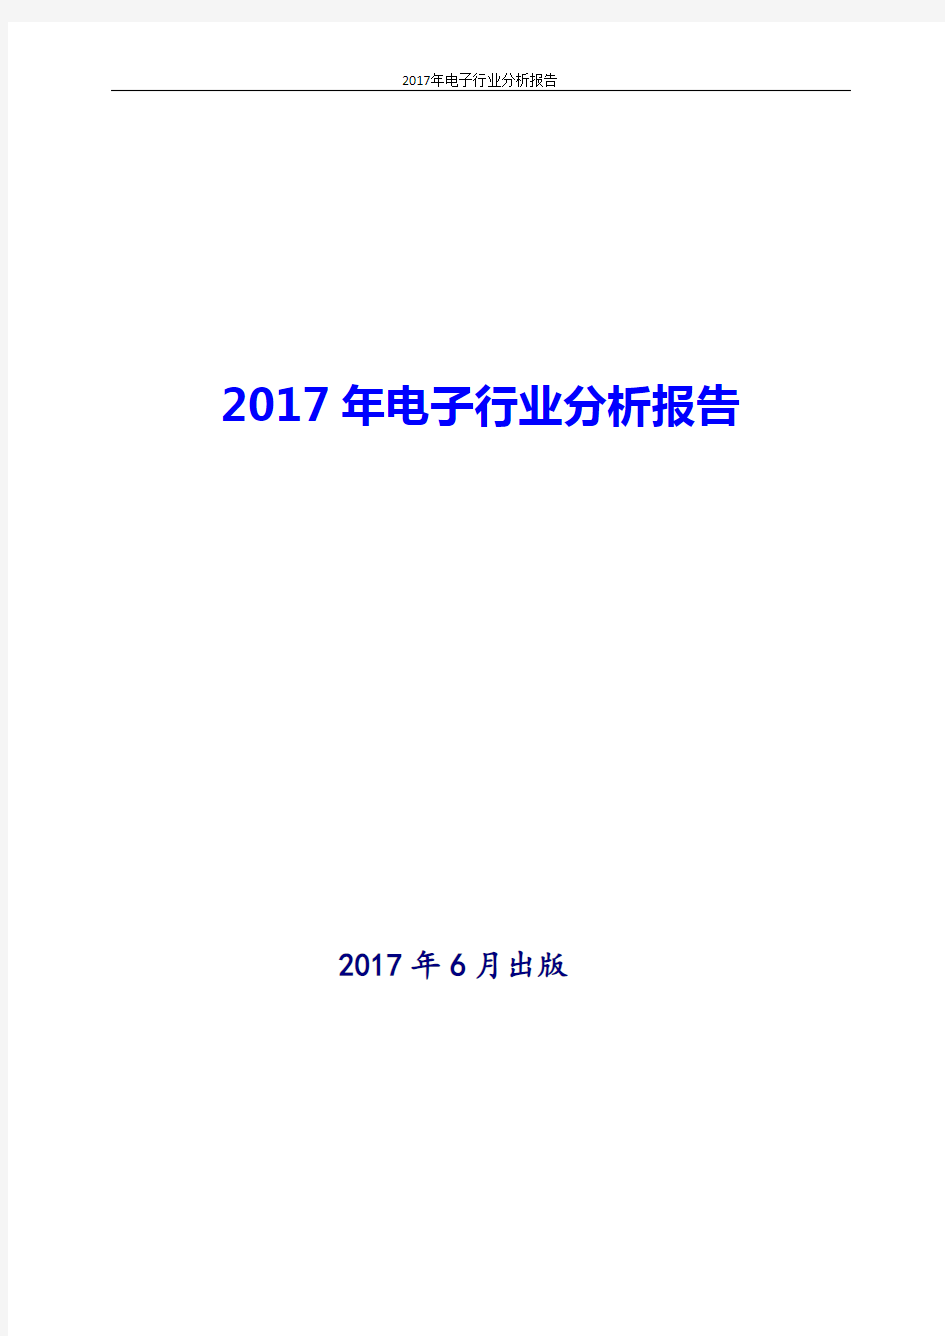 2017-2018年最新版中国电子行业现状及发展前景趋势展望投资策略分析报告